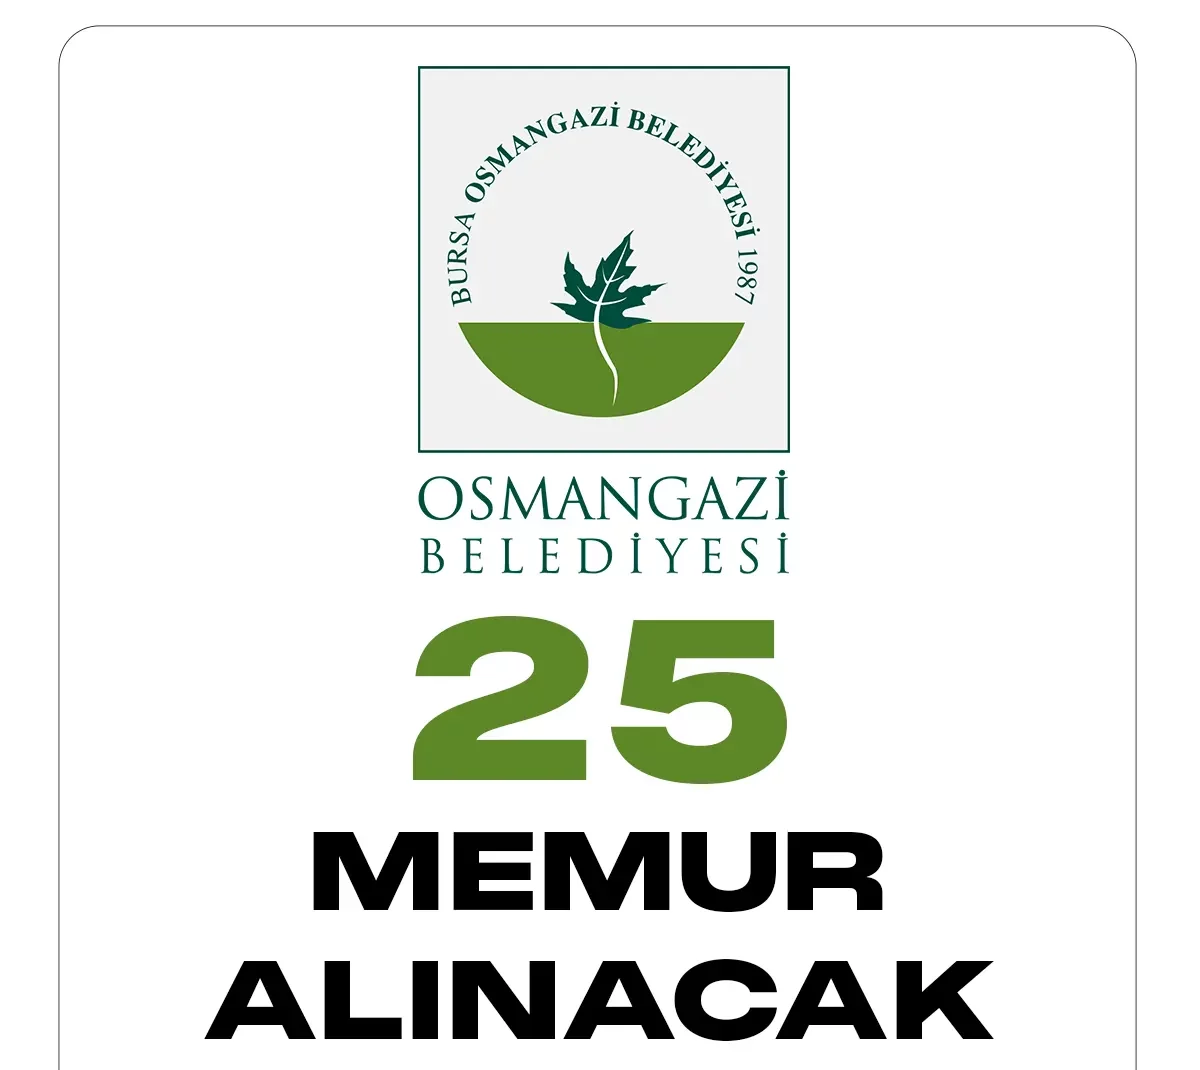 Osmangazi Belediyesi memur alımı duyurusu yayımlandı. Cumhurbaşkanlığı SBB'de yayımlanan duyuruya göre, Osmangazi Belediyesine 25 memur alımı yapılacağı aktarıldı.